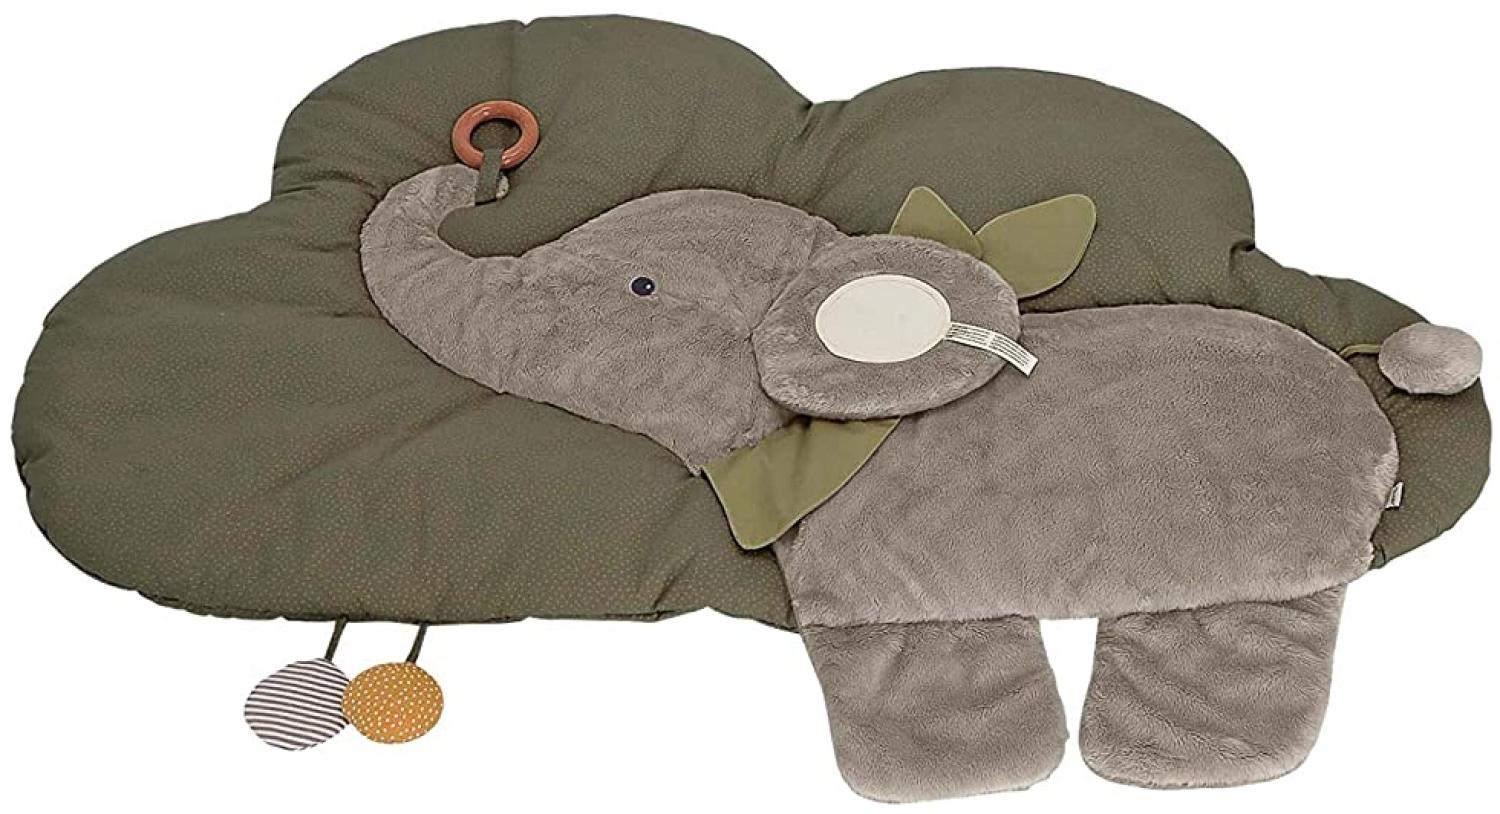 Sterntaler Baby Unisex Krabbeldecke Wolkenform Elefant Eddy - Schlafteppich, Spielmatte aus Flauschstoff, Spieldecke - grau Bild 1